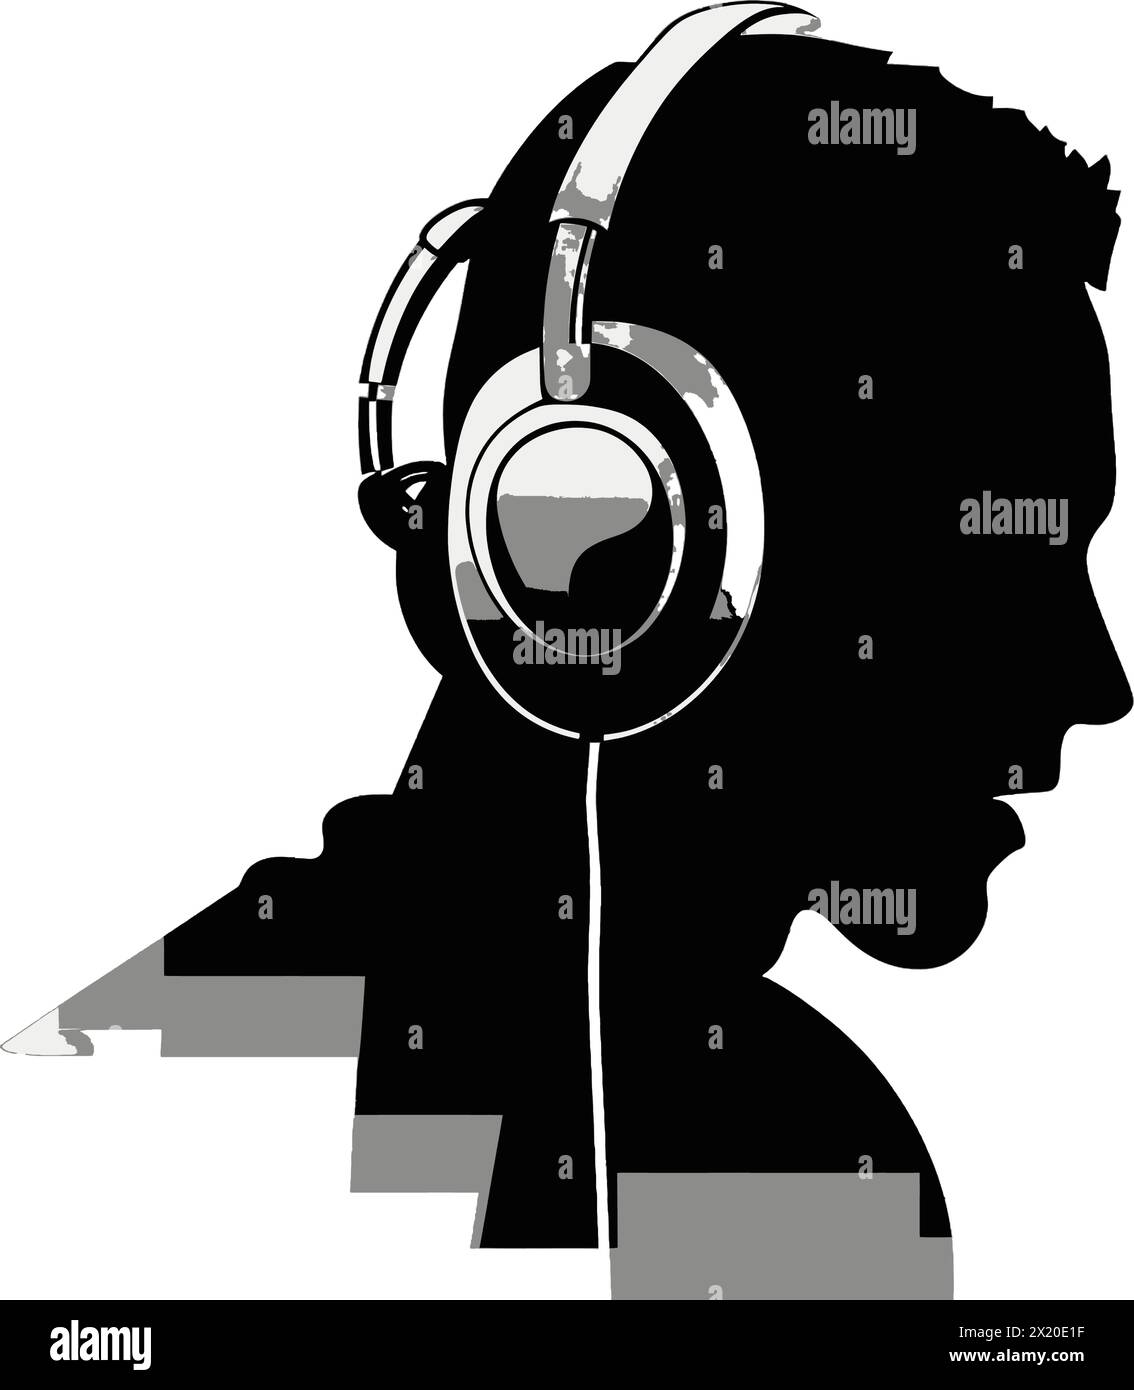 Illustration vectorielle d'un homme portant un casque dans une silhouette noire sur un fond blanc propre, capturant des formes élégantes. Illustration de Vecteur